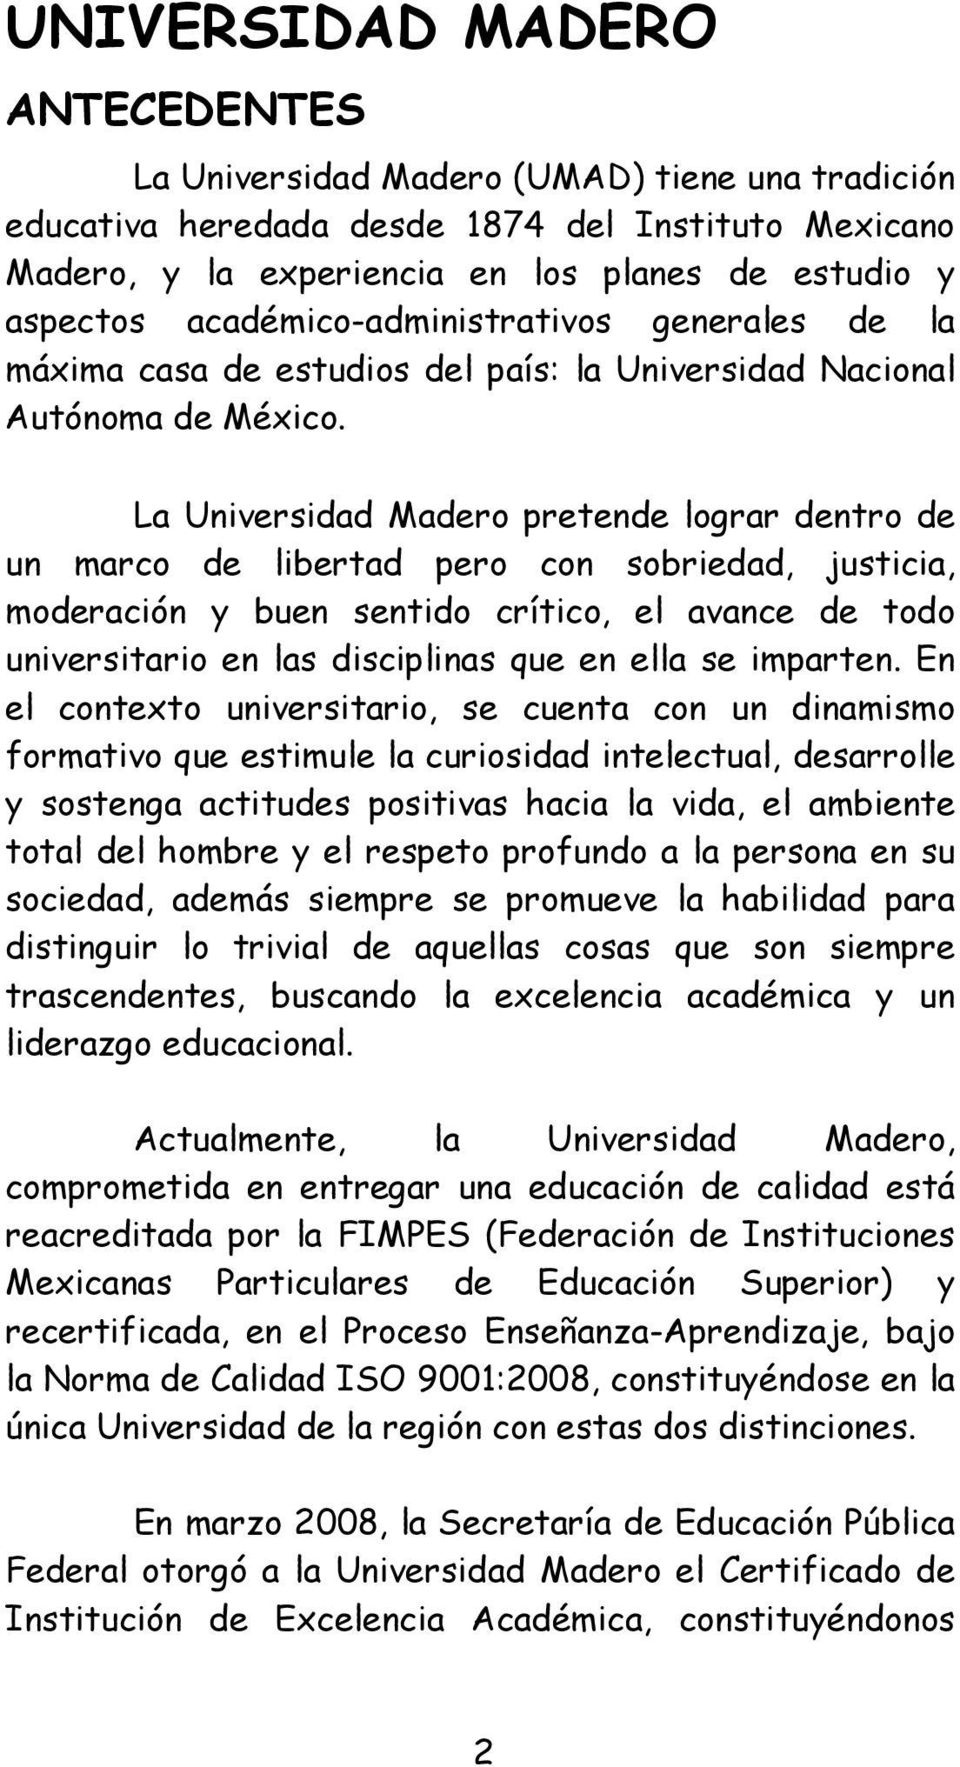 La Universidad Madero pretende lograr dentro de un marco de libertad pero con sobriedad, justicia, moderación y buen sentido crítico, el avance de todo universitario en las disciplinas que en ella se